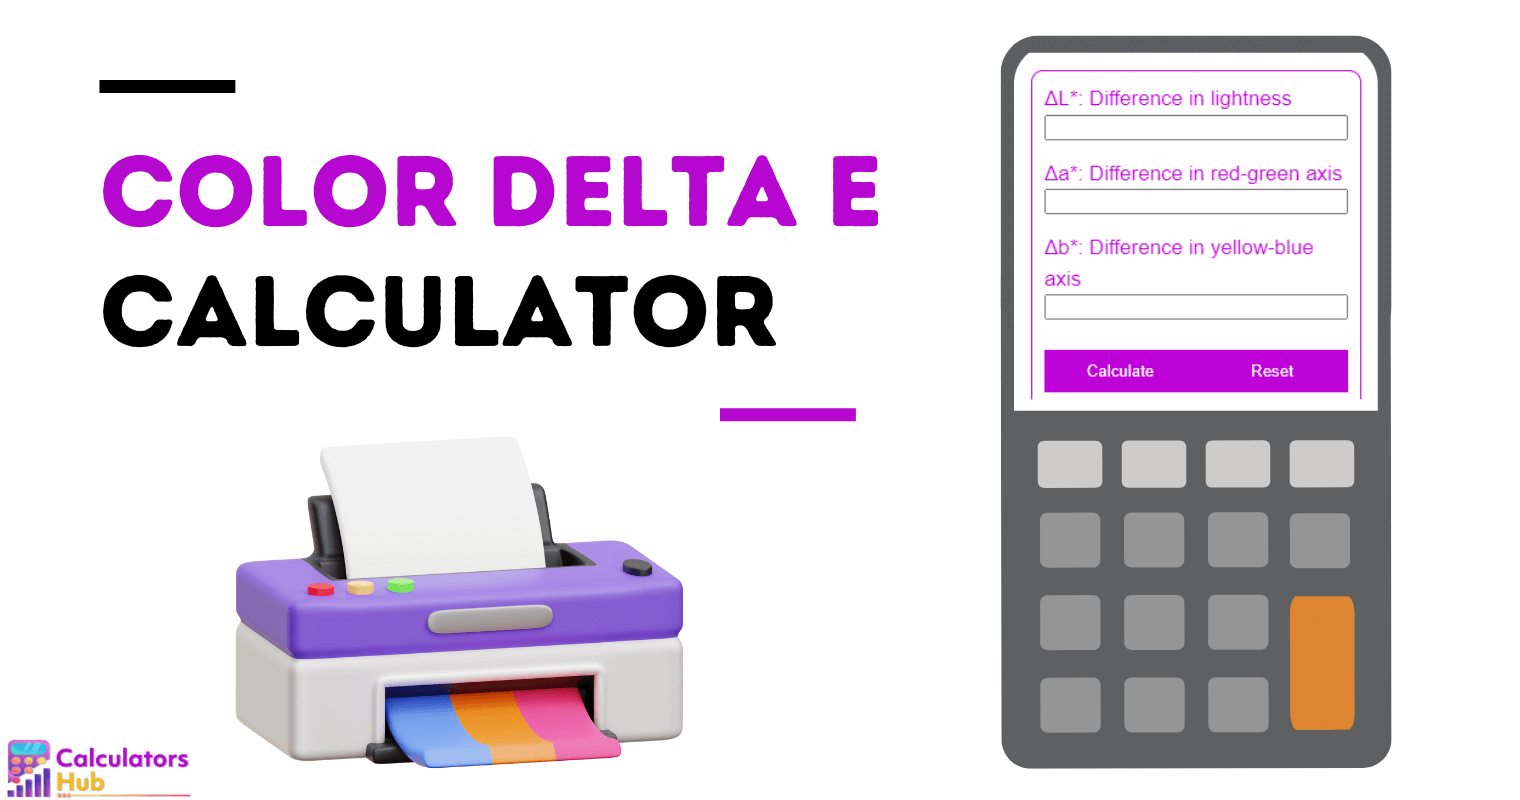 Calculateur de Delta E de couleur